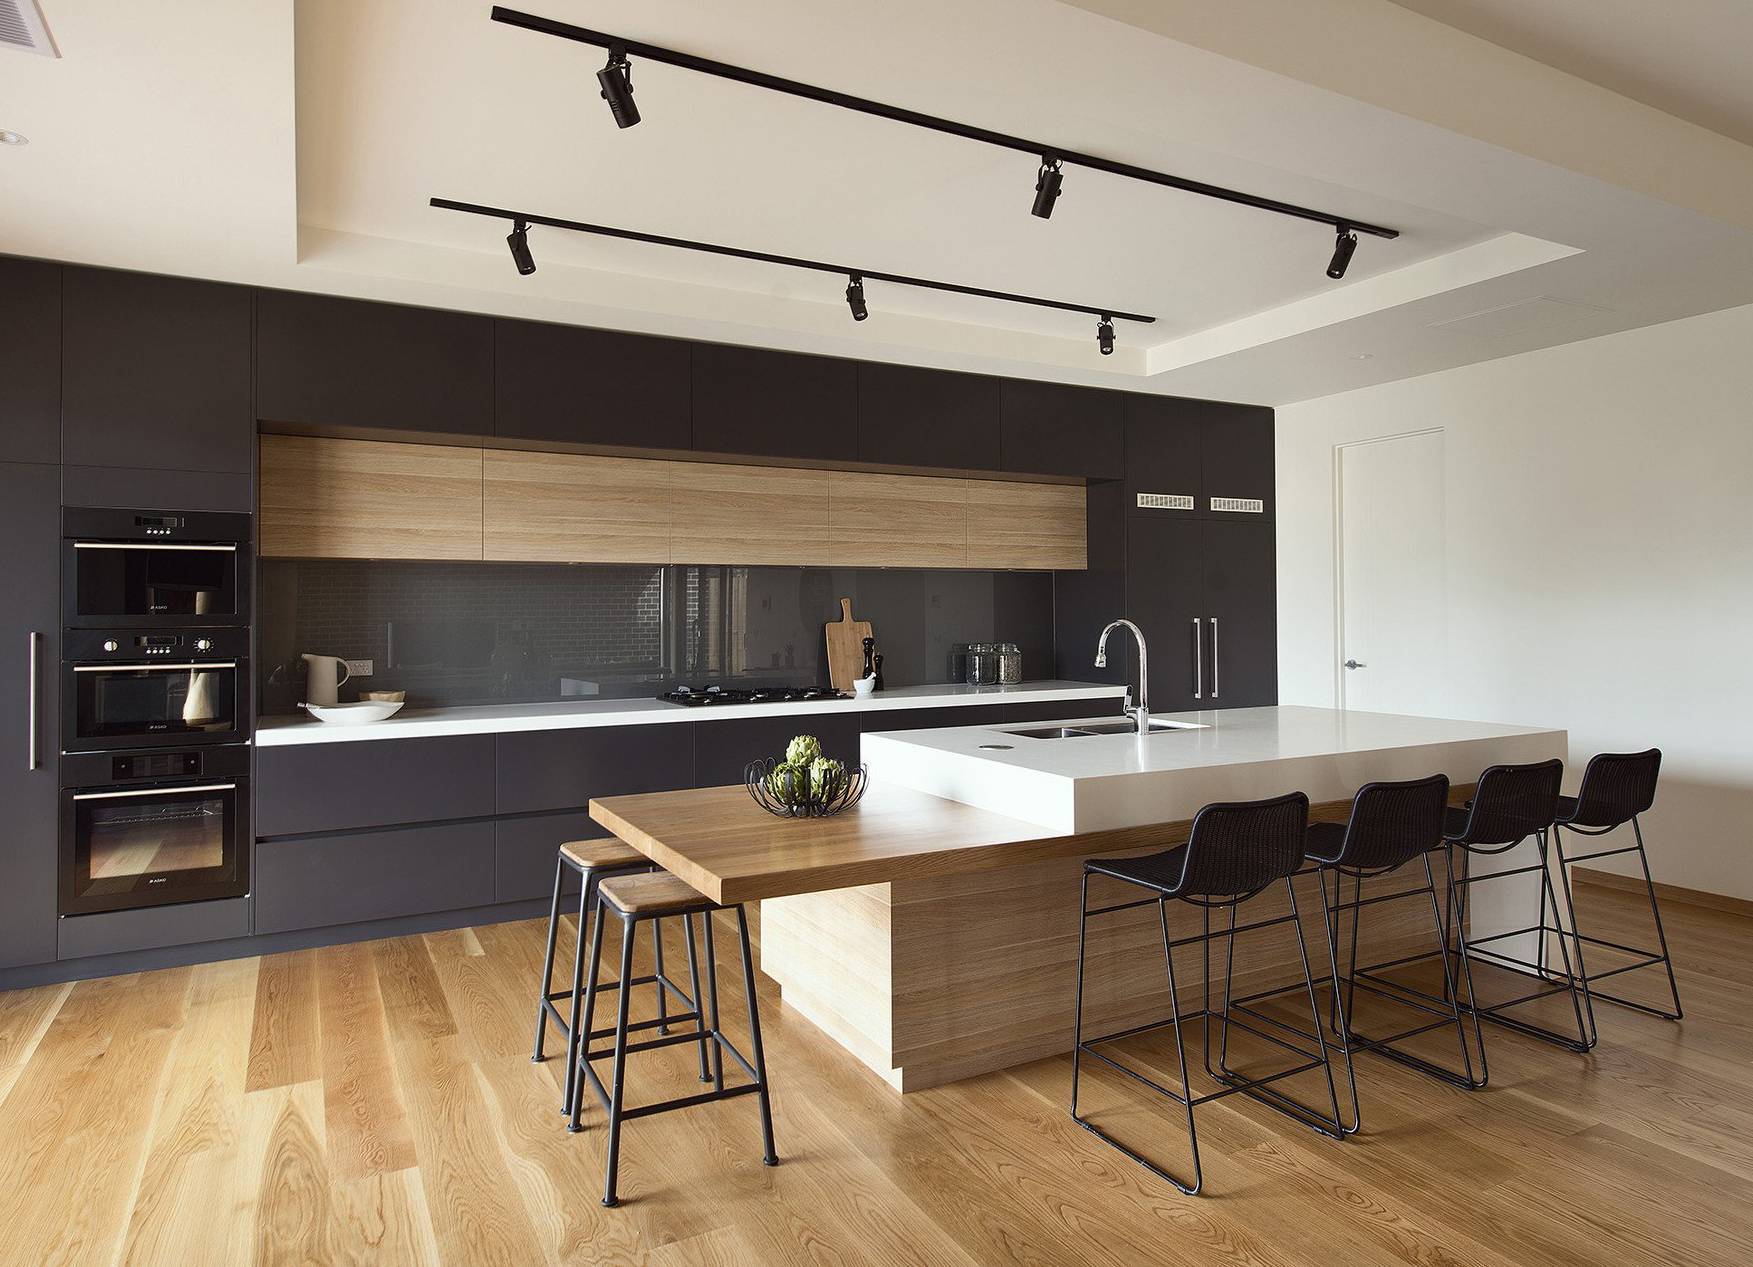 Кухня в стиле модерн - 55 фото видео дизайна кухни в стиле модерн